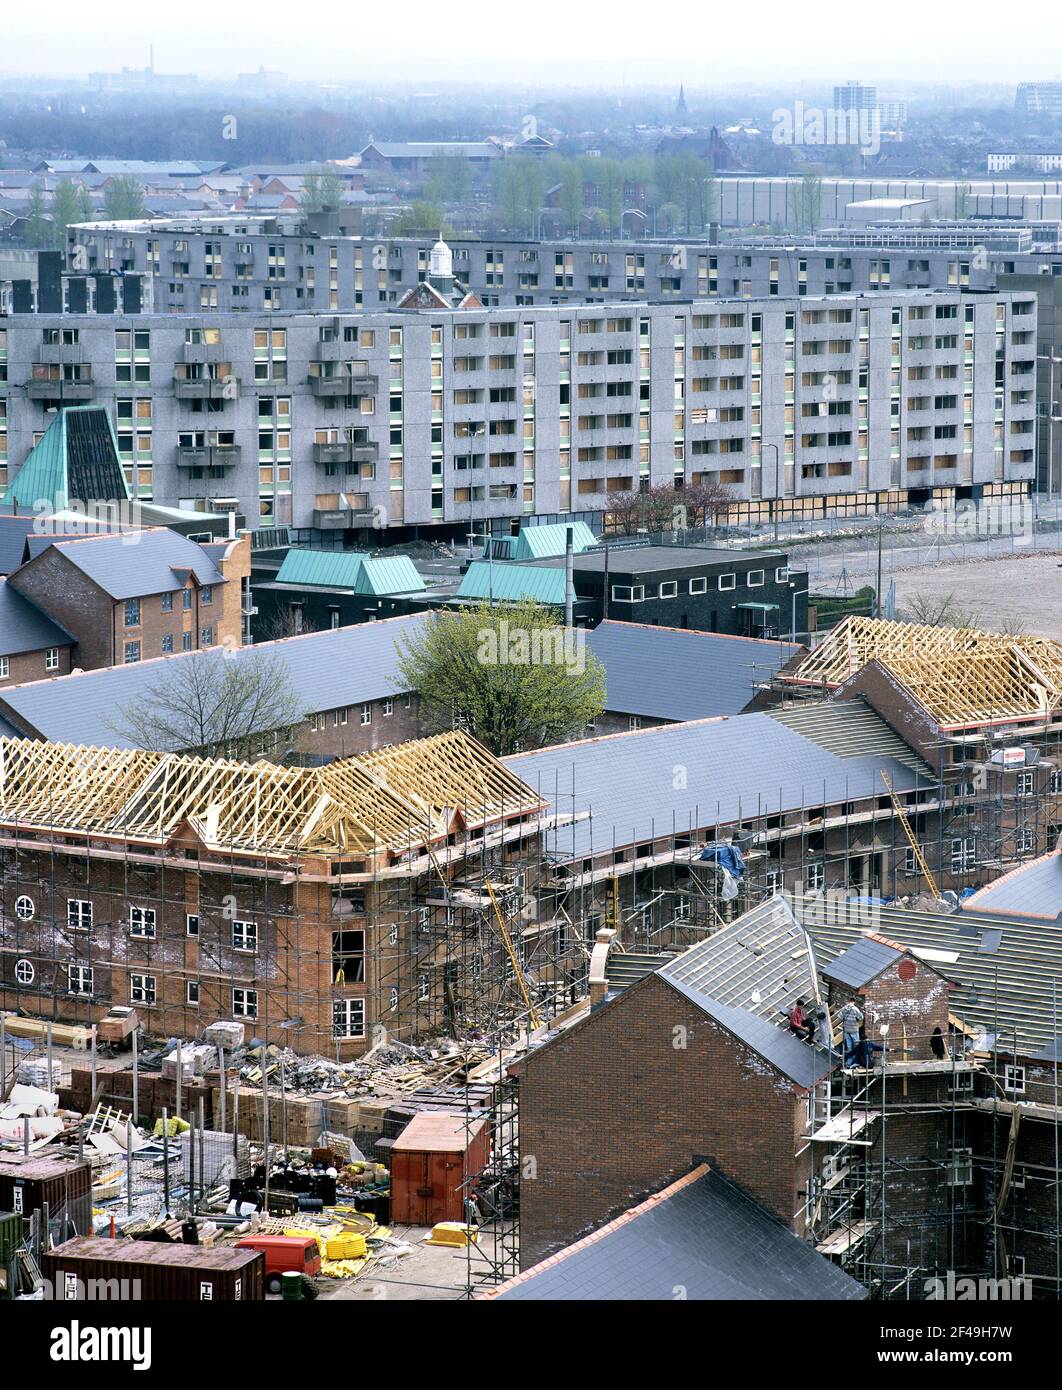 Nuove case di associazione immobiliare in costruzione a Hulme, Manchester, con alcuni dei crescents Hulme anni '70 alle spalle, sono salite prima della demolizione. Foto Stock